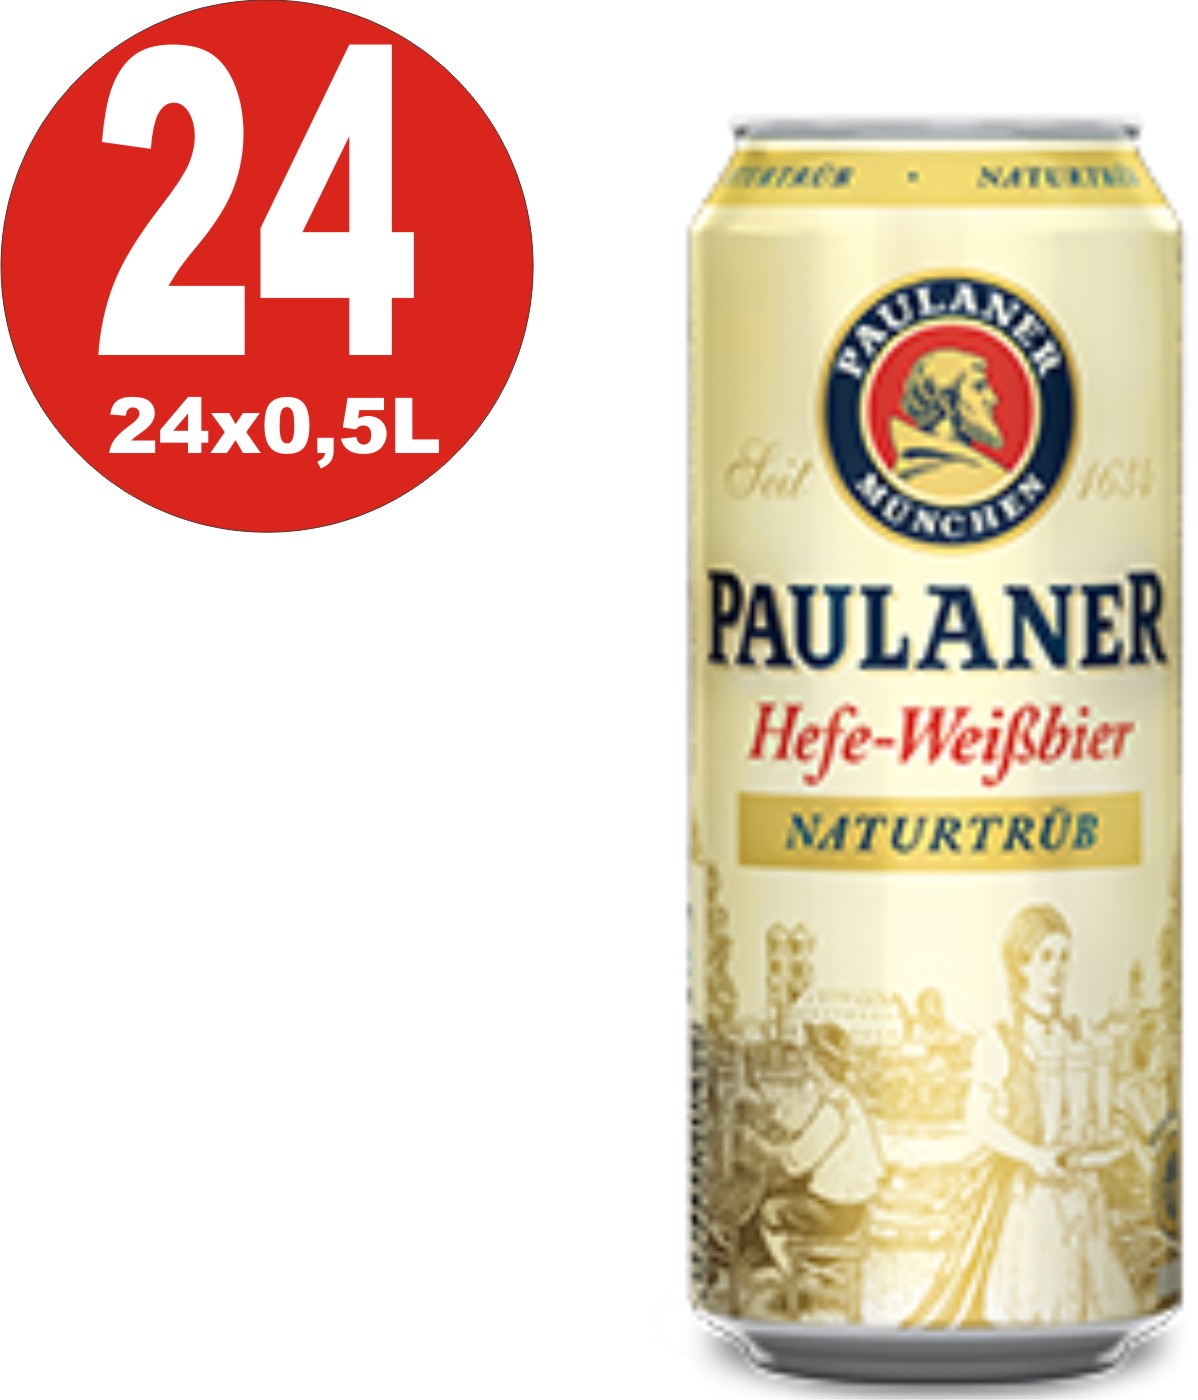 2 x Paulaner Hefe-Weissbier Naturtrüb 5,5 % vol 5 Liter Partyfass 3,24€/L